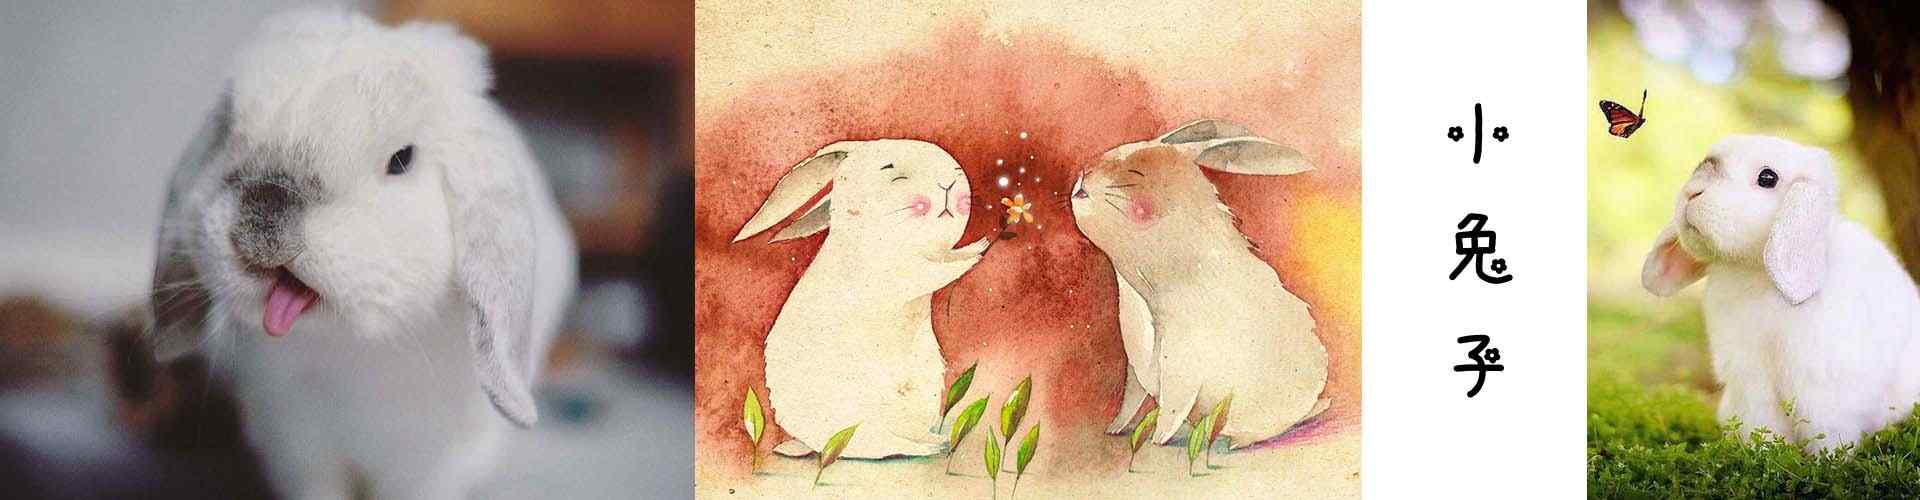 小兔子_可爱小兔子图片壁纸_毛毡小兔子图片_小兔子手机壁纸_可爱动物壁纸